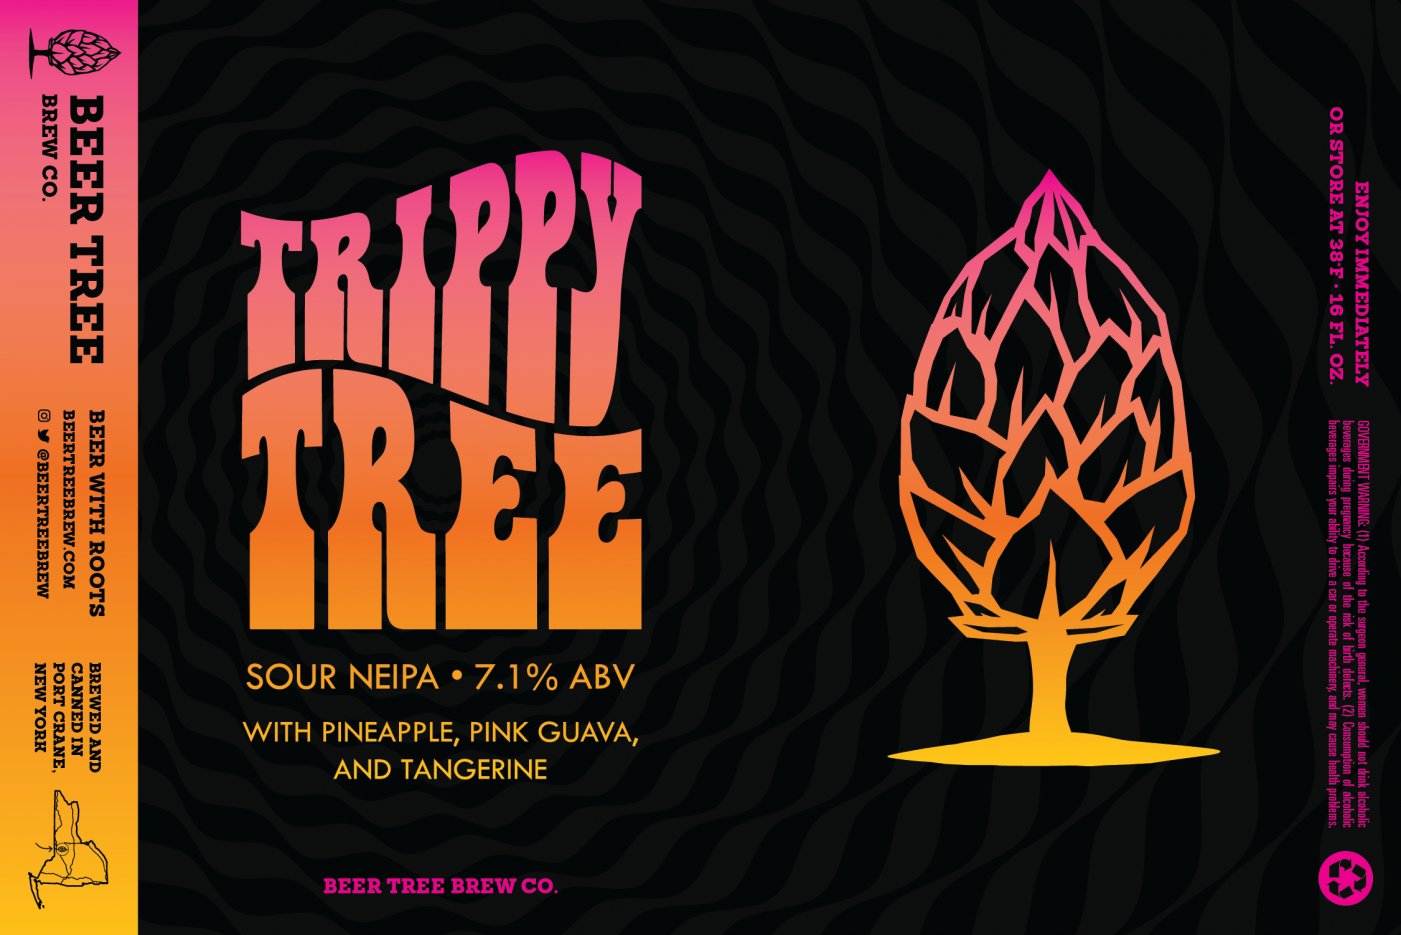 Trippy Tree_Label - Die 440 copy 2.png